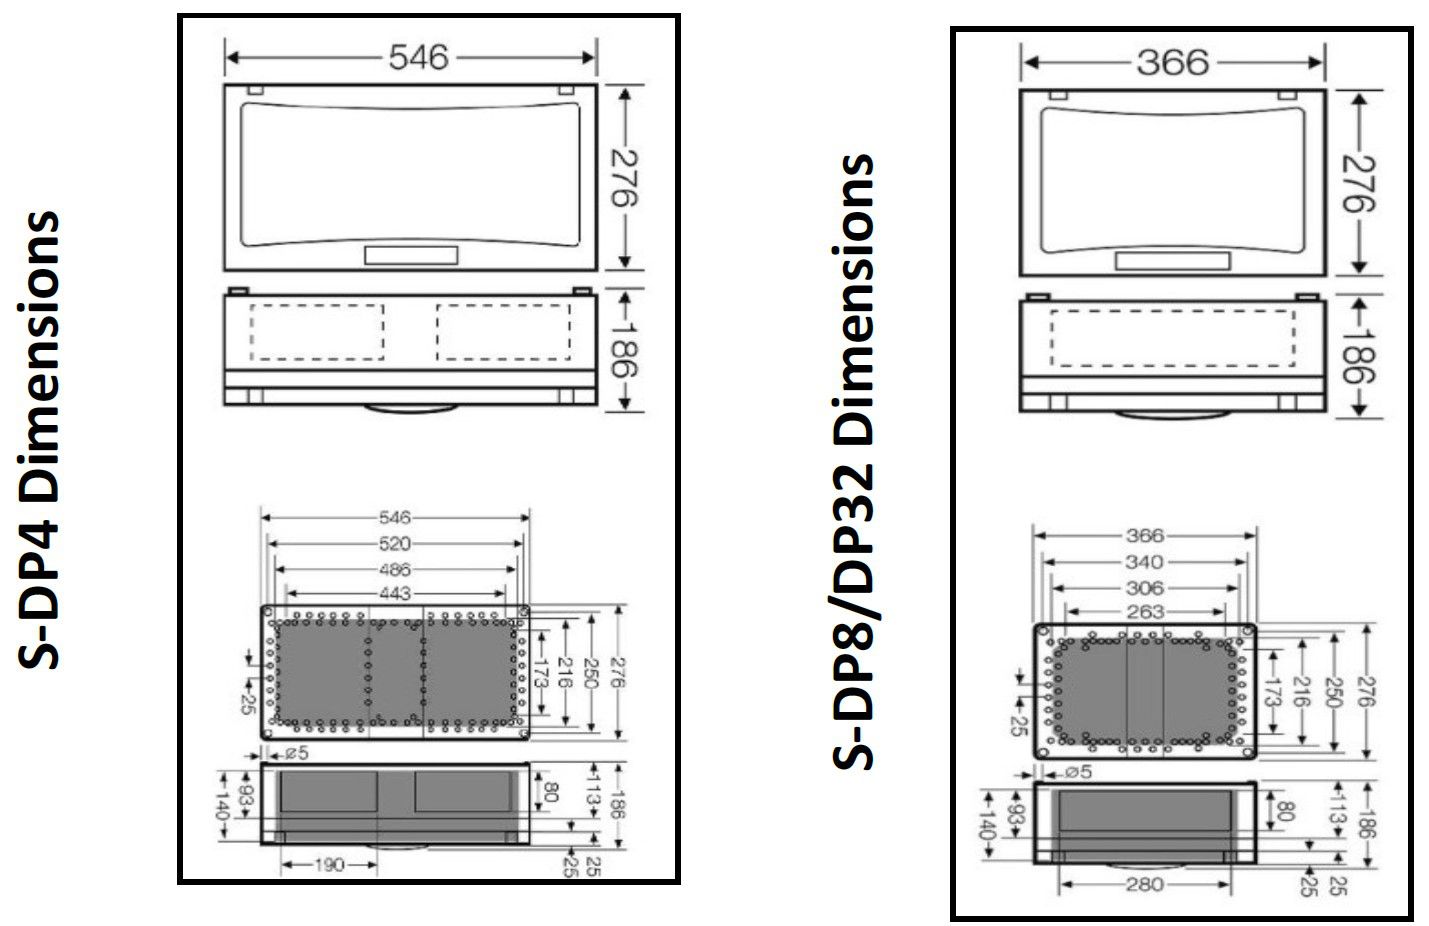 Prosense S-DP4 analoge Gaswarn-Zentrale - bis zu 4x analoge 4-20-mA Eingänge - für hohe industrielle Anforderungen